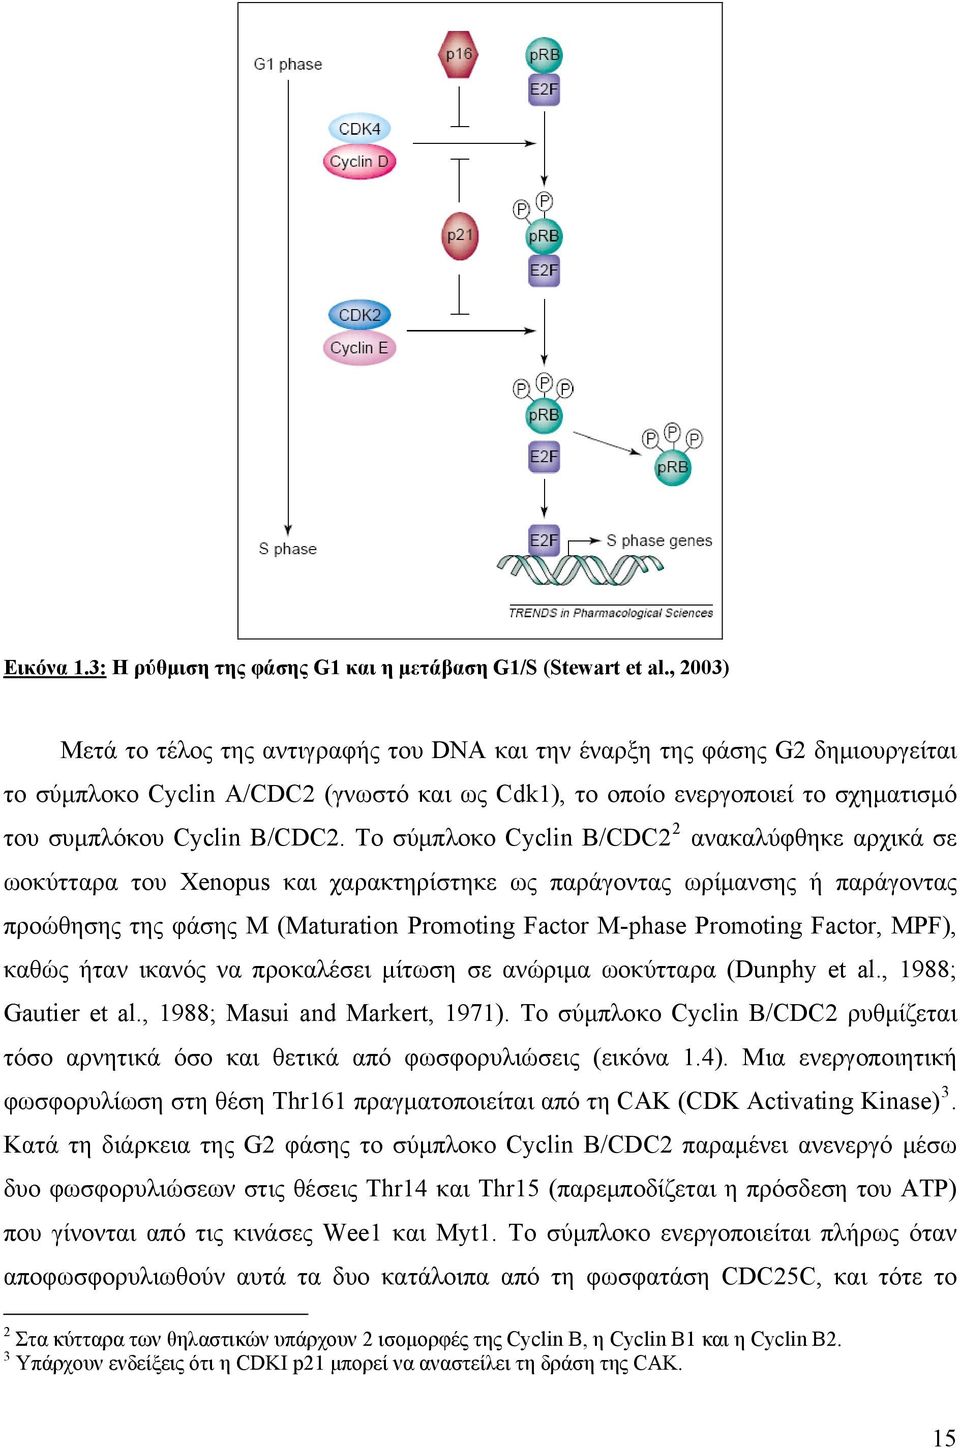 Το σύμπλοκο Cyclin Β/CDC2 2 ανακαλύφθηκε αρχικά σε ωοκύτταρα του Xenopus και χαρακτηρίστηκε ως παράγοντας ωρίμανσης ή παράγοντας προώθησης της φάσης Μ (Maturation Promoting Factor M-phase Promoting